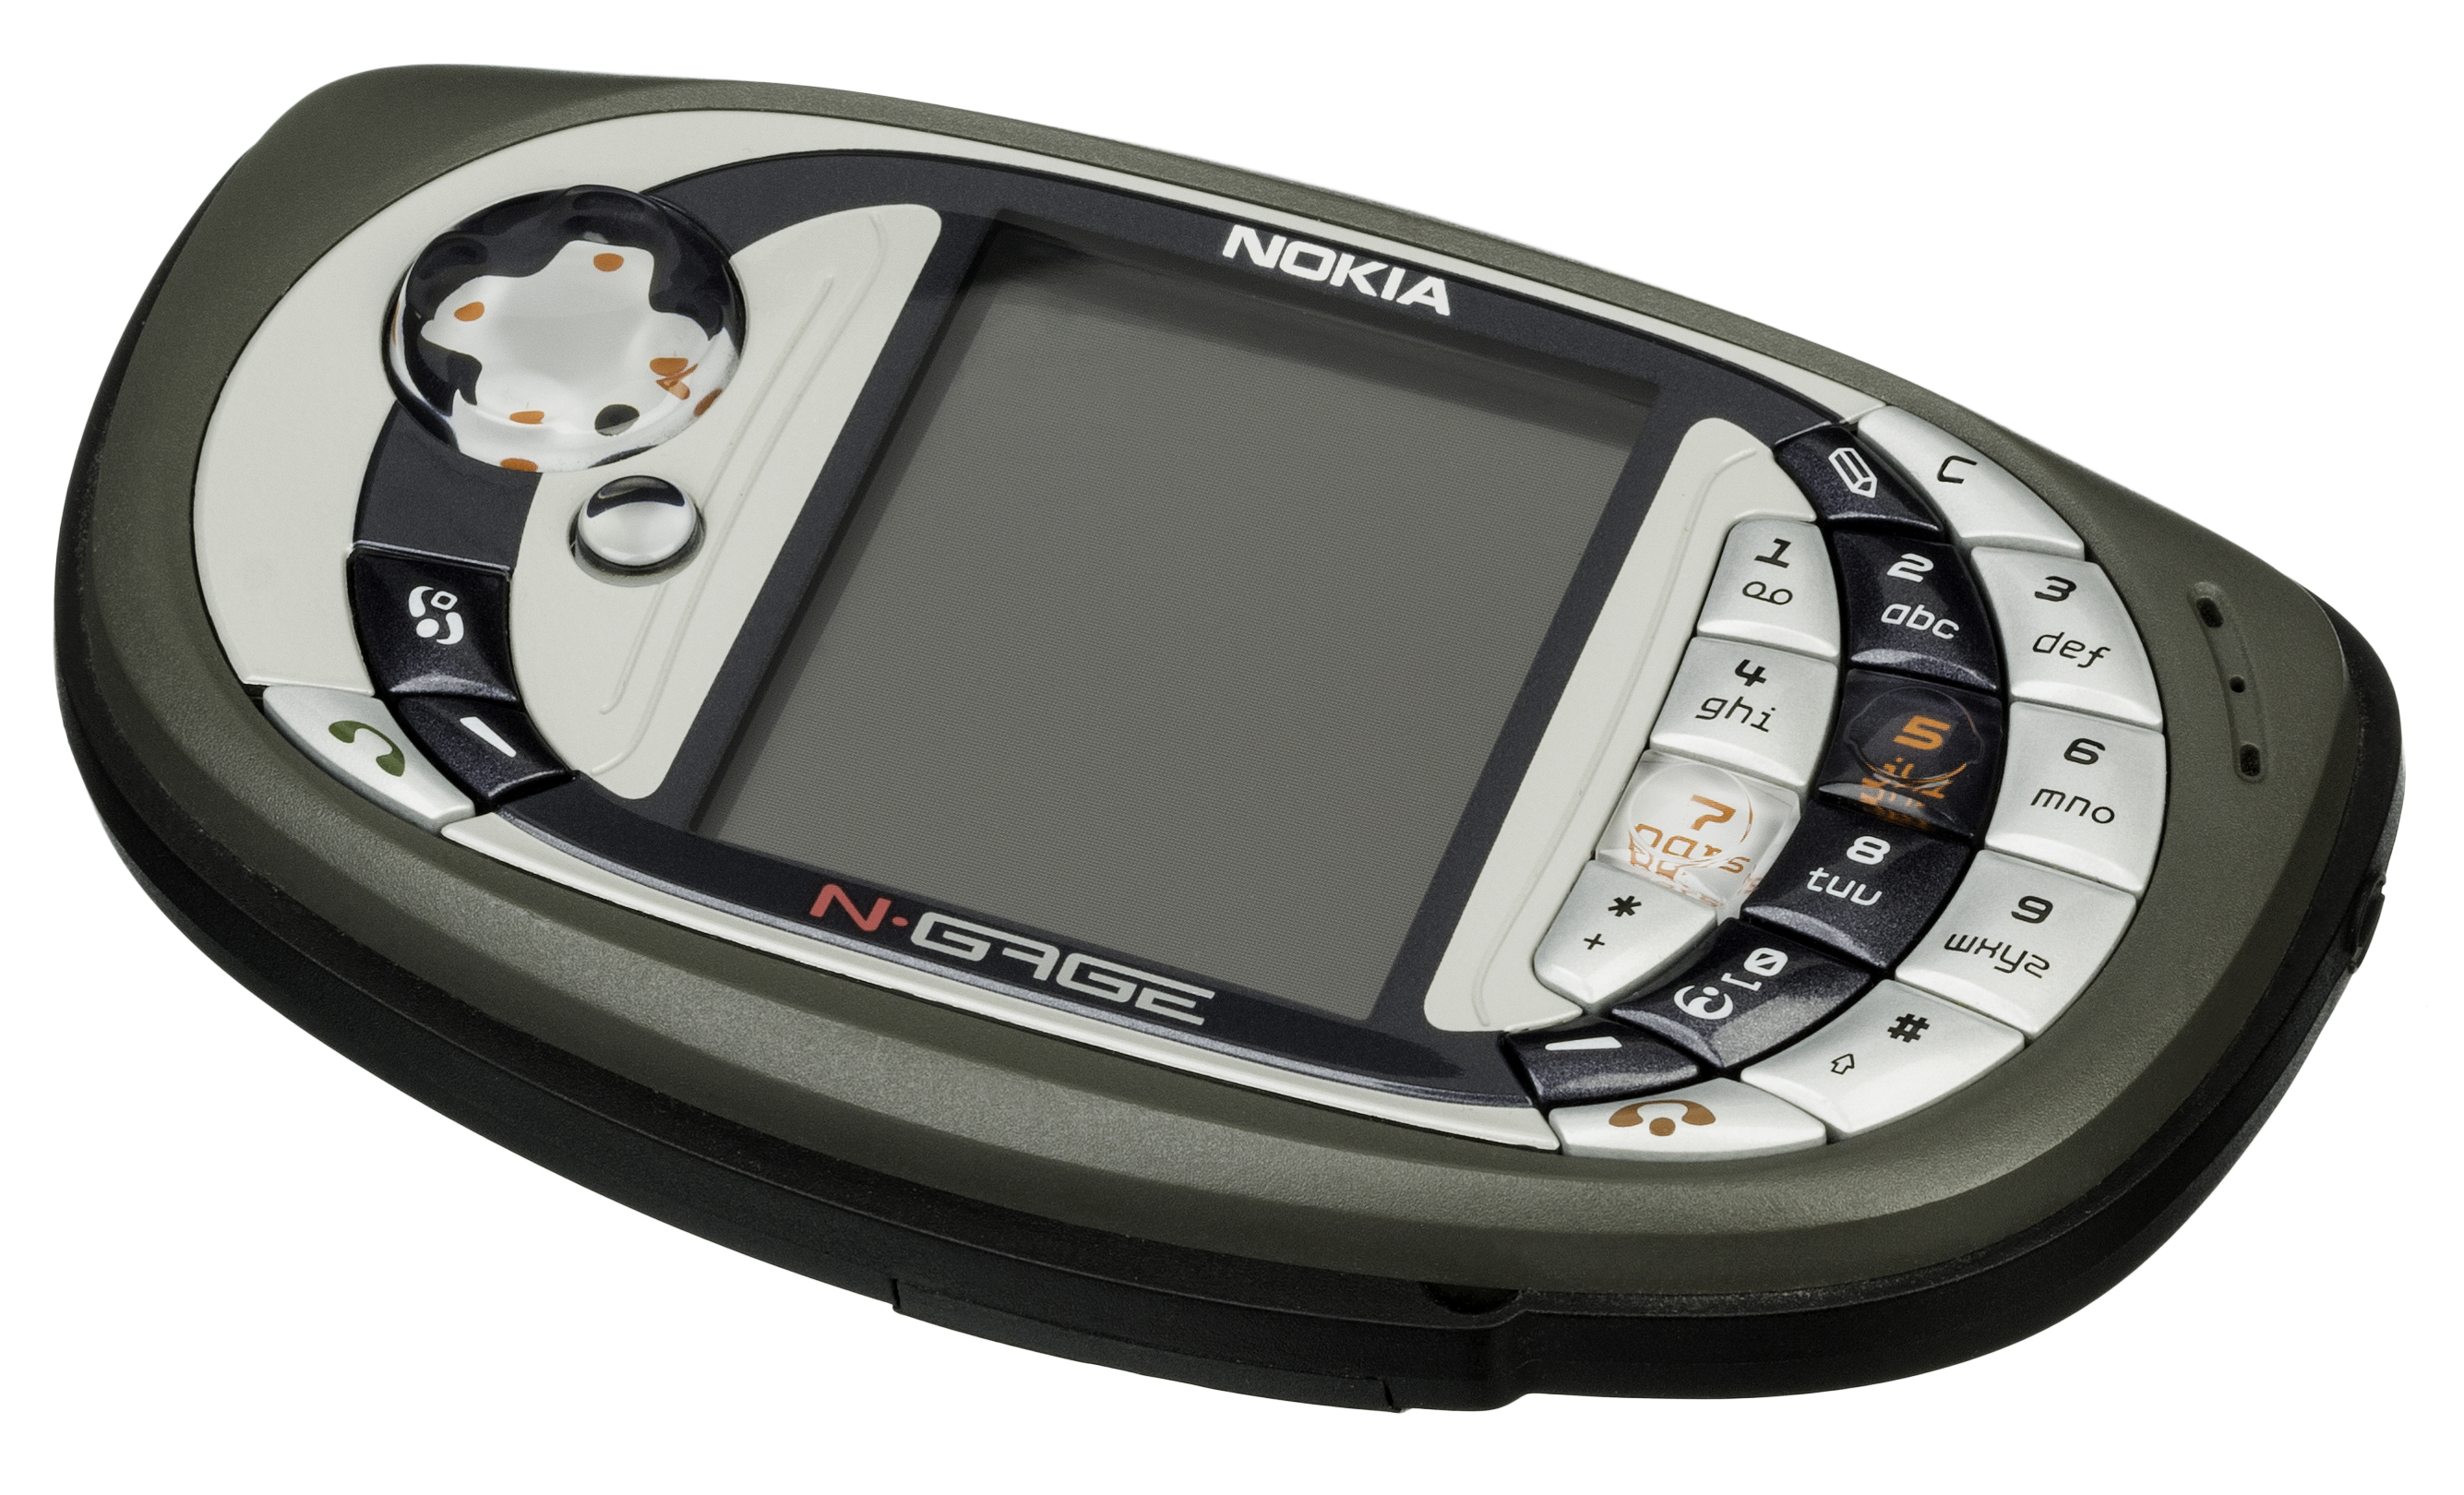 Download N Gage Installer For Nokia N96